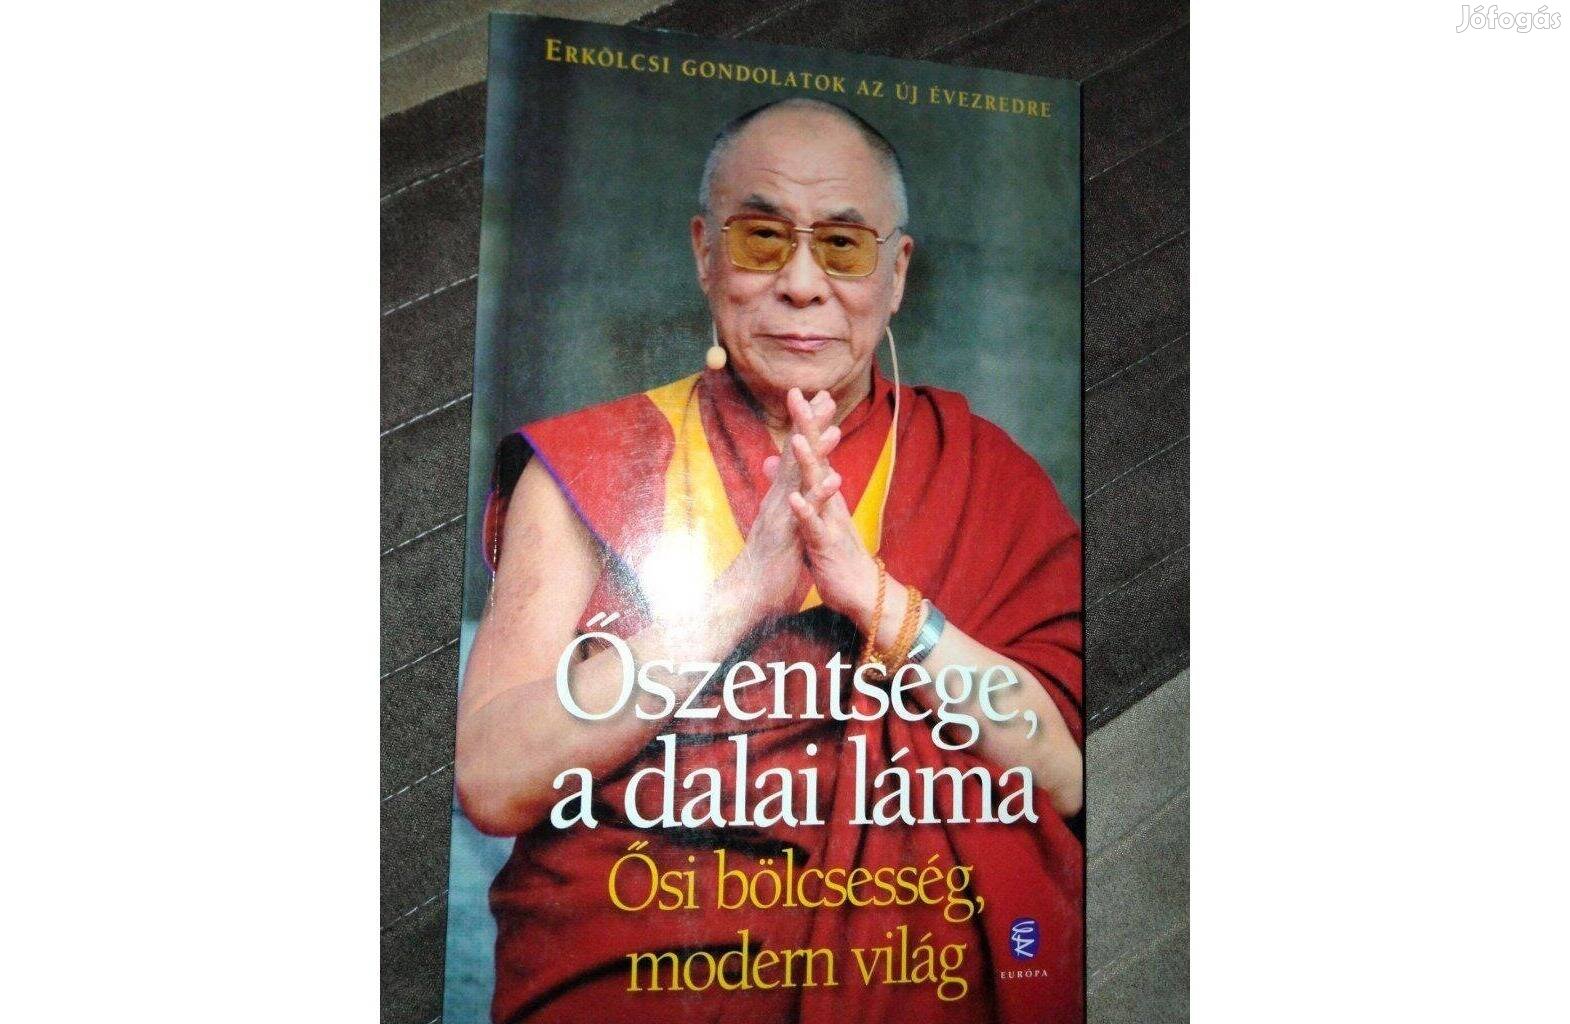 Őszentsége, a dalai láma - Ősi bölcsesség, modern világ